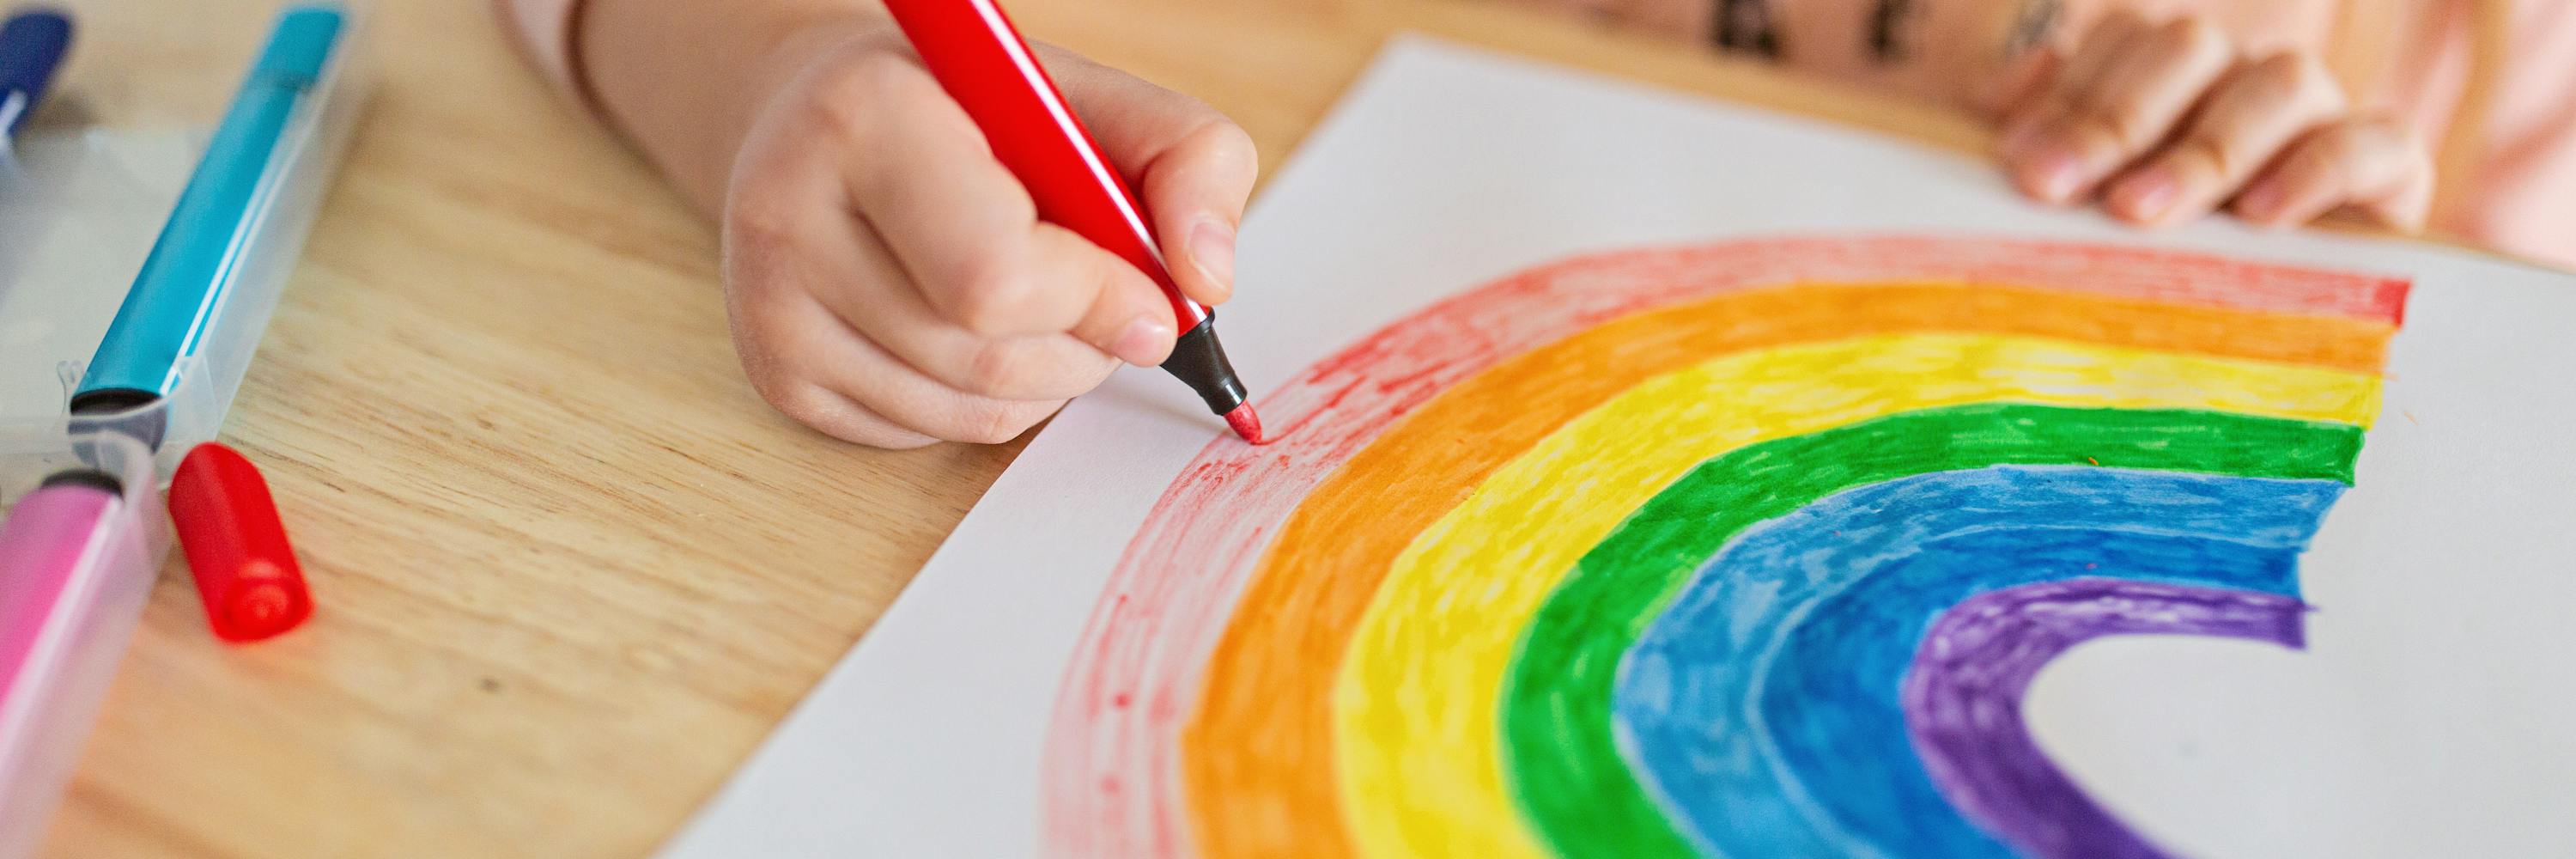 Kind zeichnet einen Regenbogen